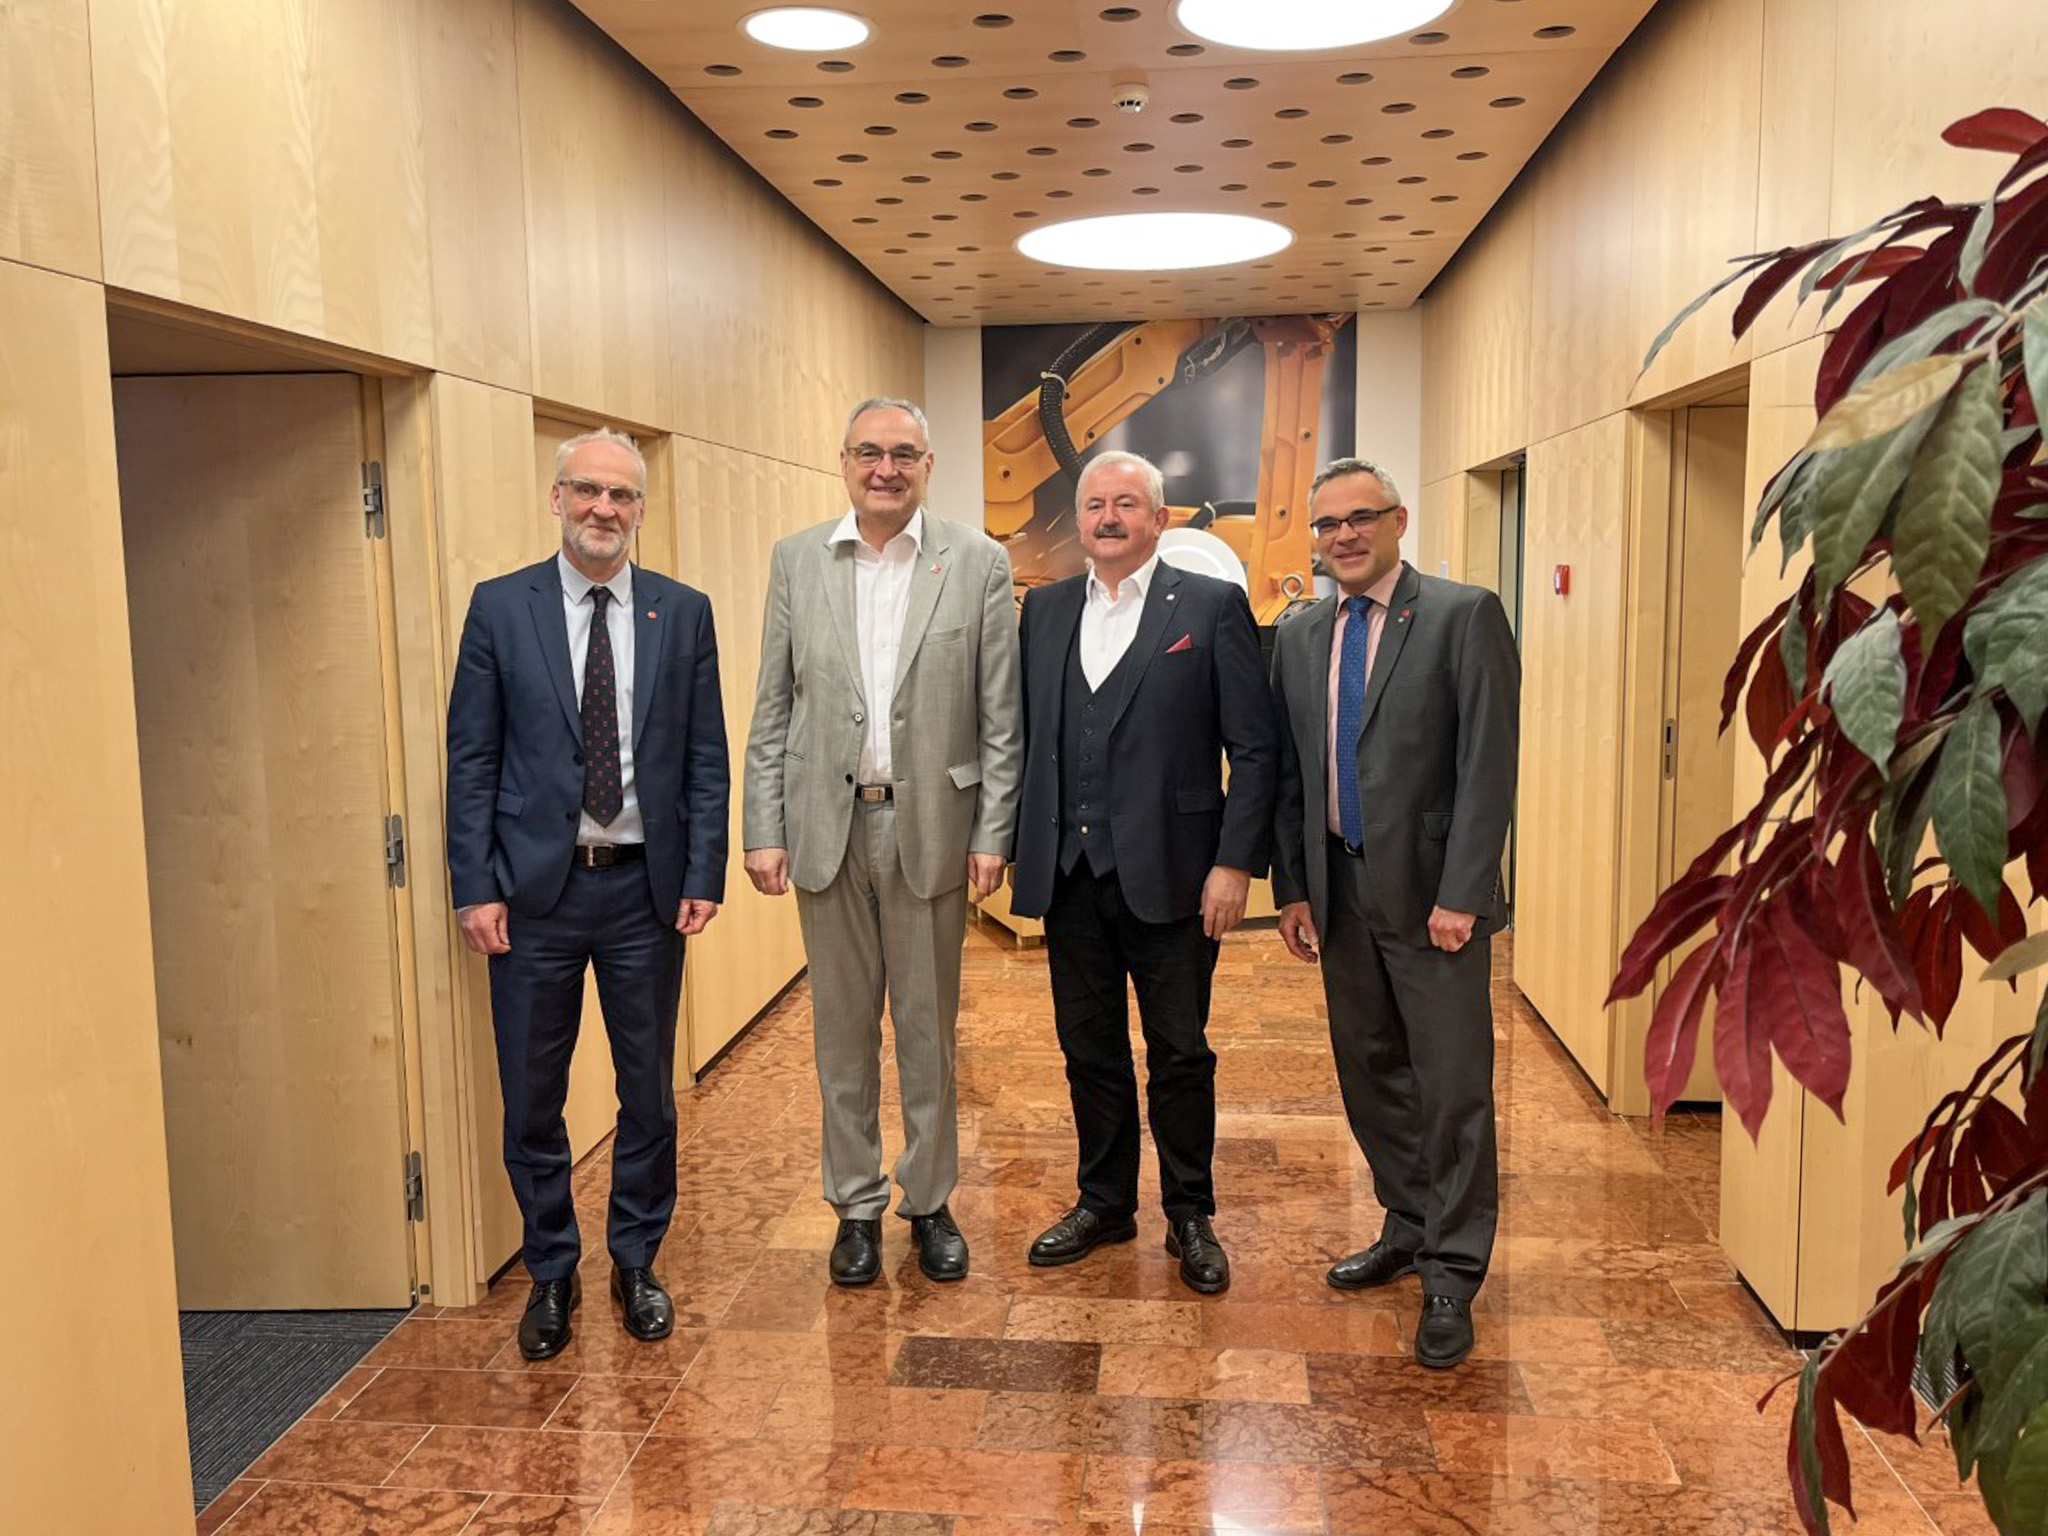 Reimund Neugebauer, President of the Fraunhofer-Gesellschaft, visits EPIC InnoLabs